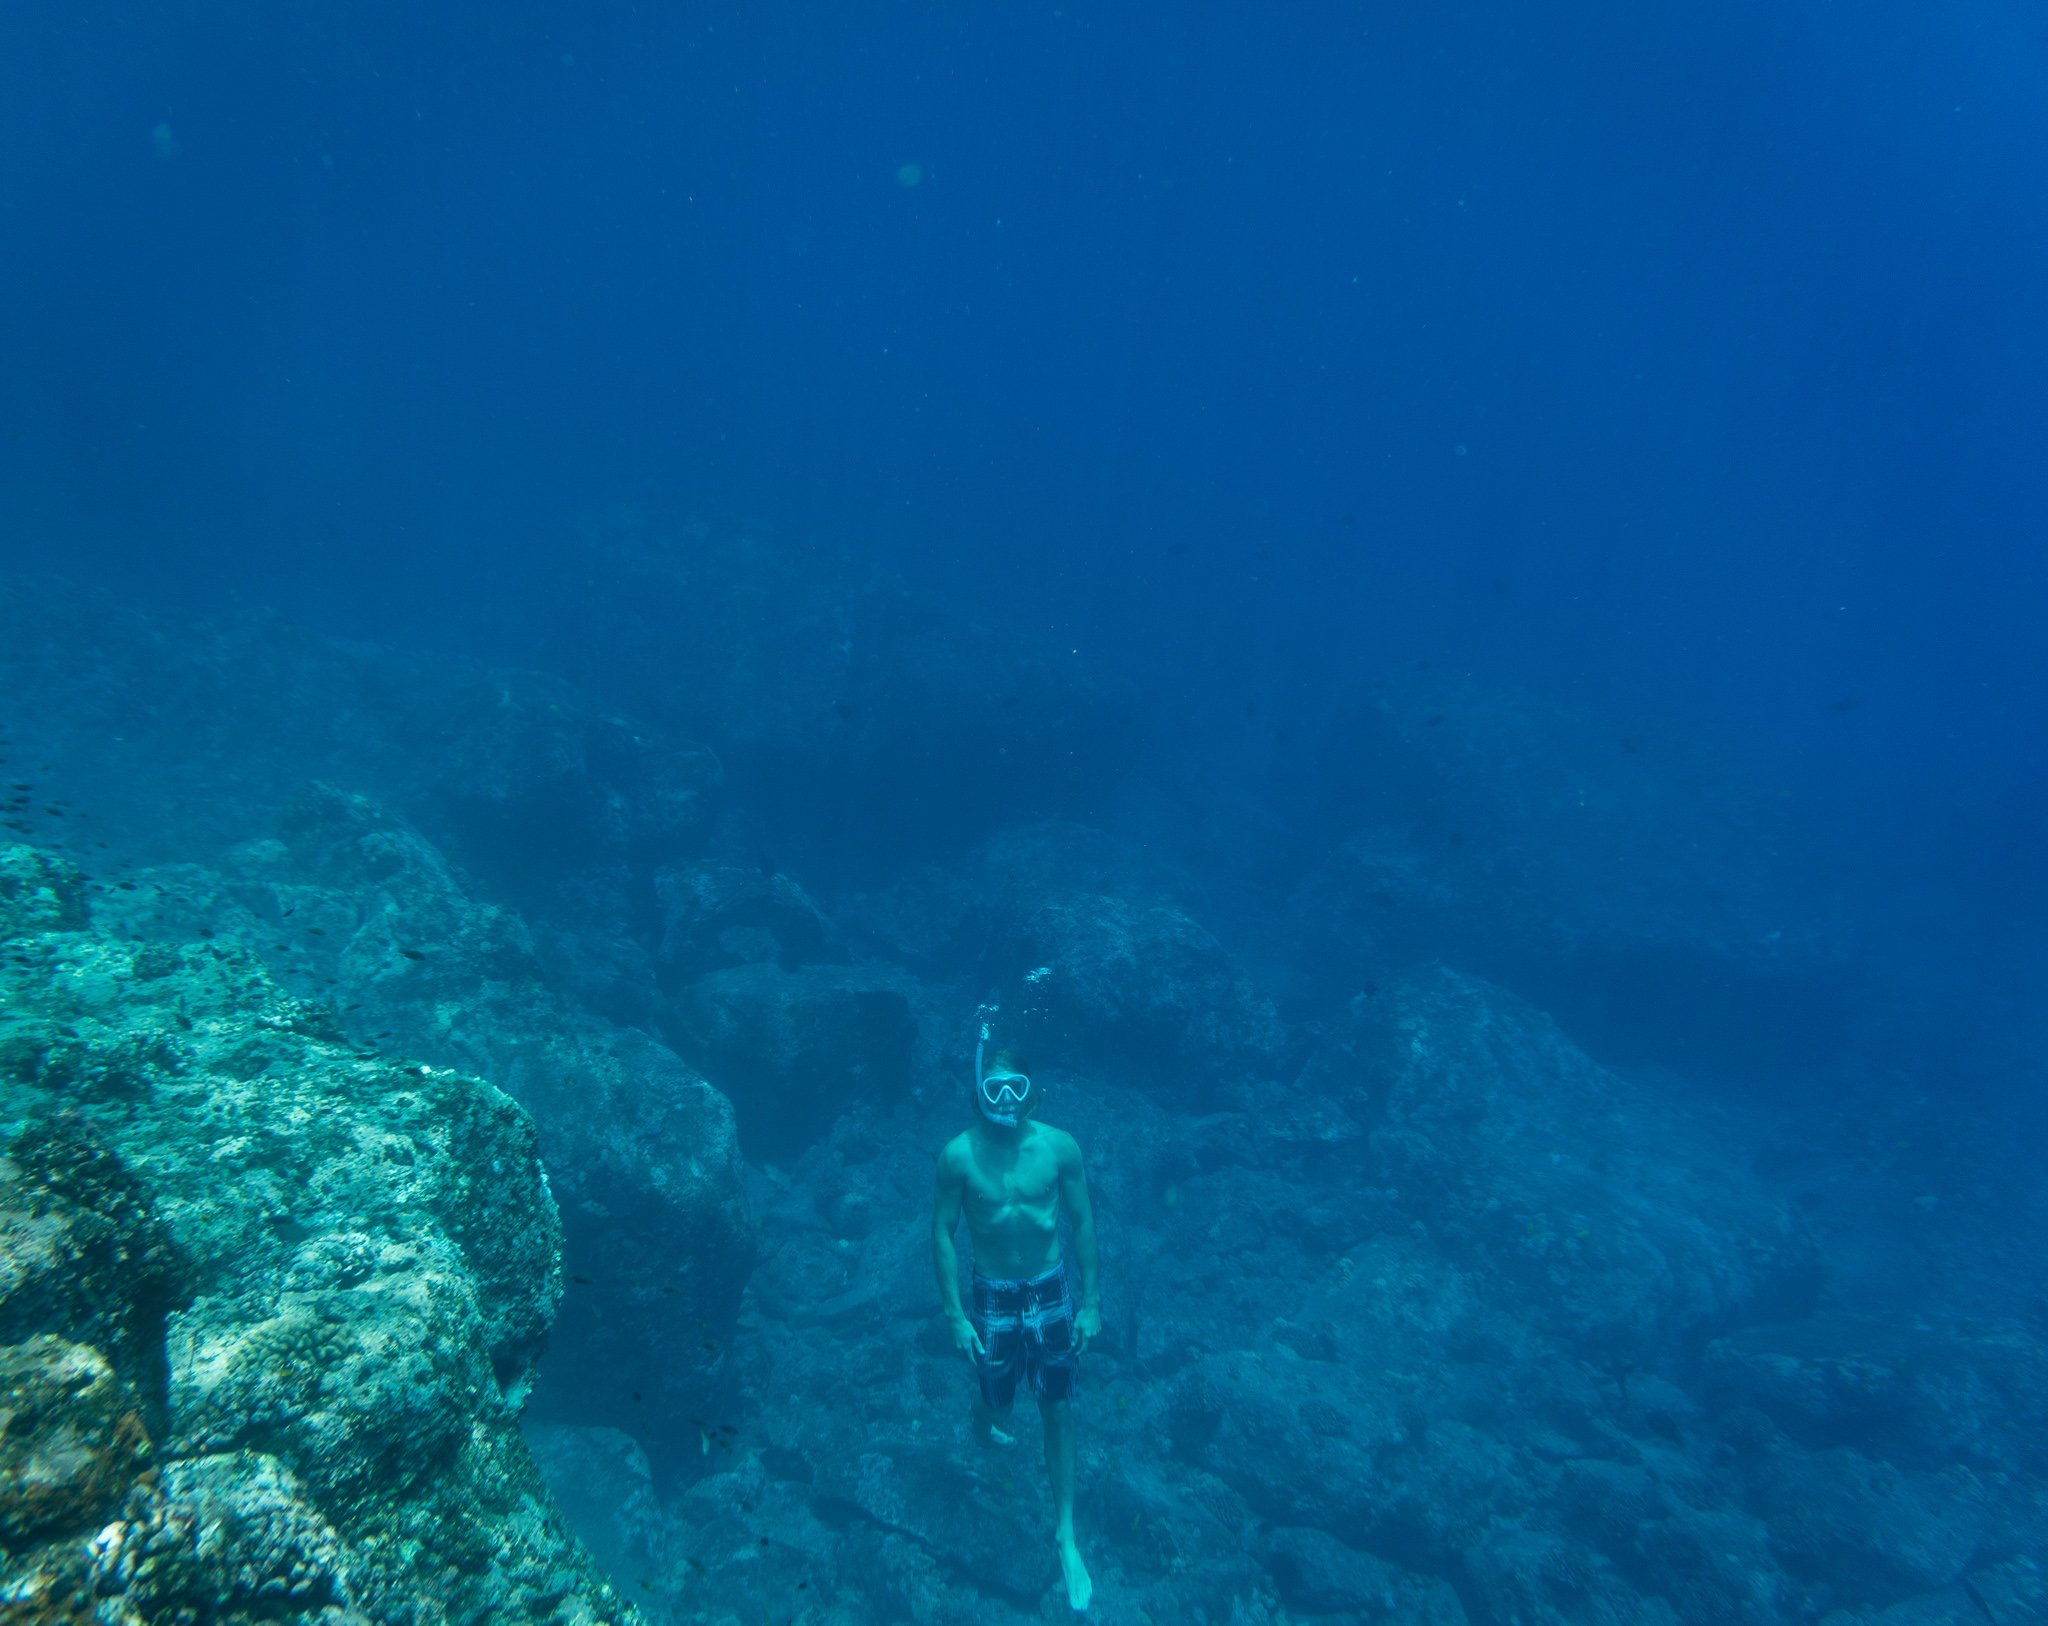 Merman Dan rising to the surface